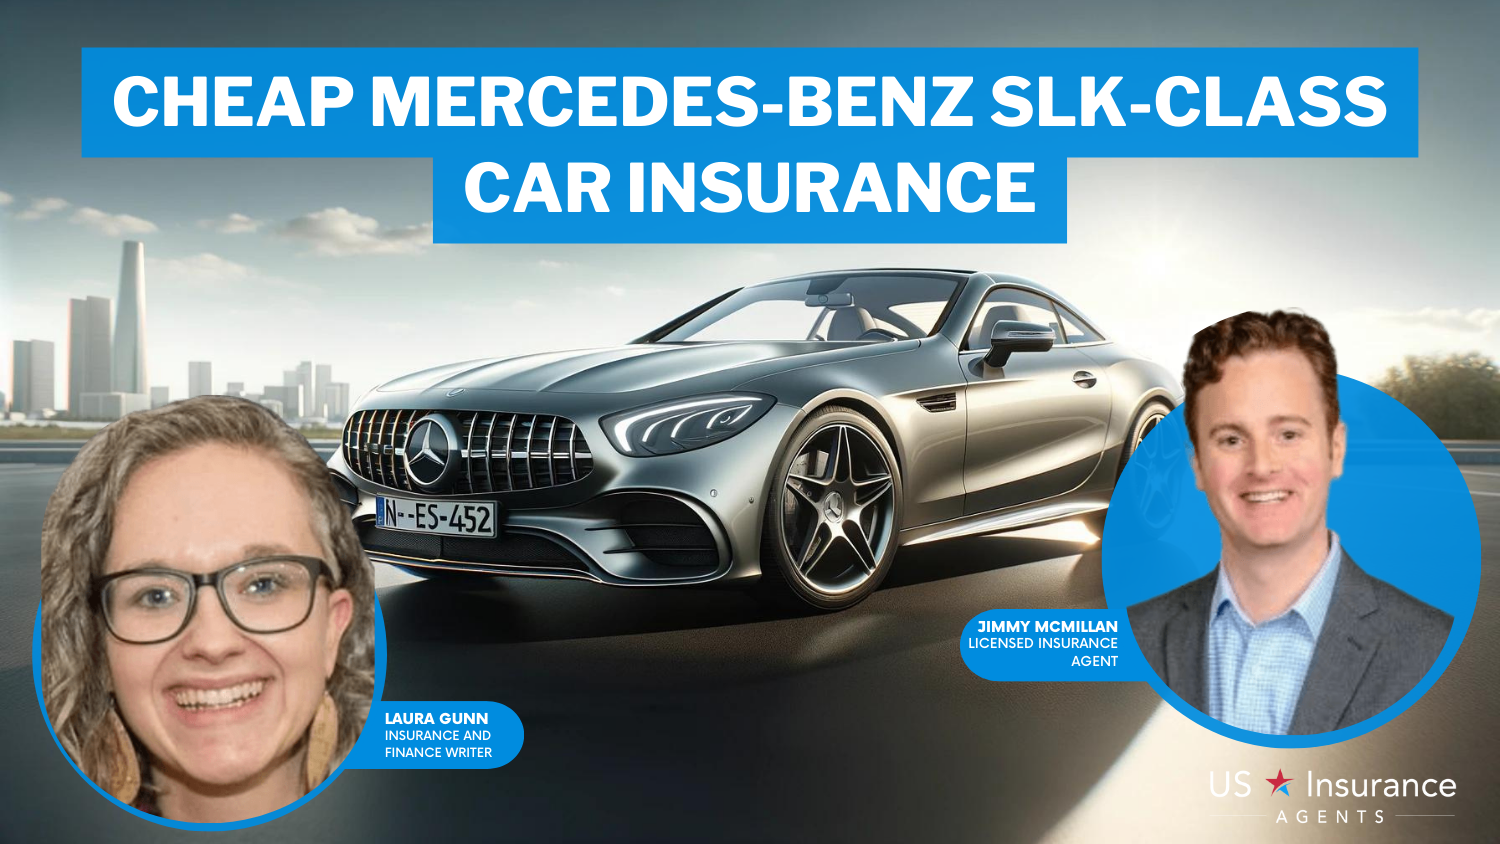 Cheap Mercedes-Benz SLK-Class Car Insurance: Chubb, Travelers, and AIG